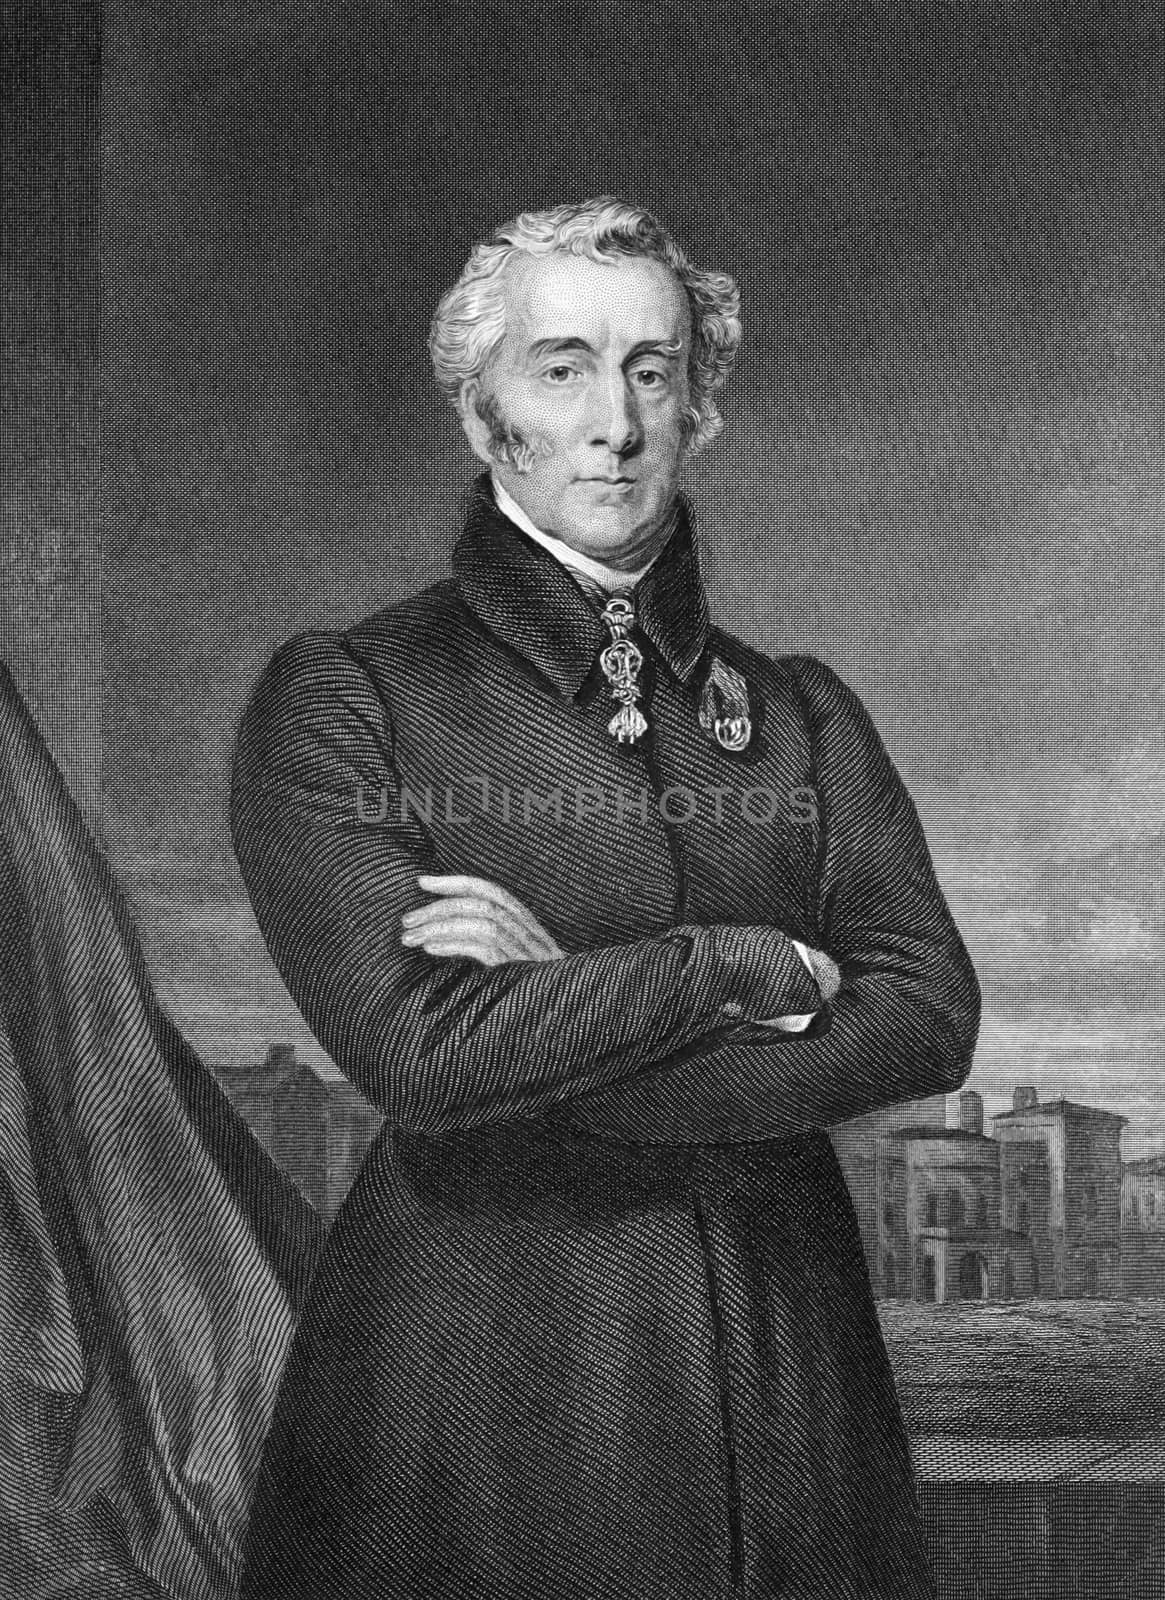 Arthur Wellesley, 1st Duke of Wellington by Georgios